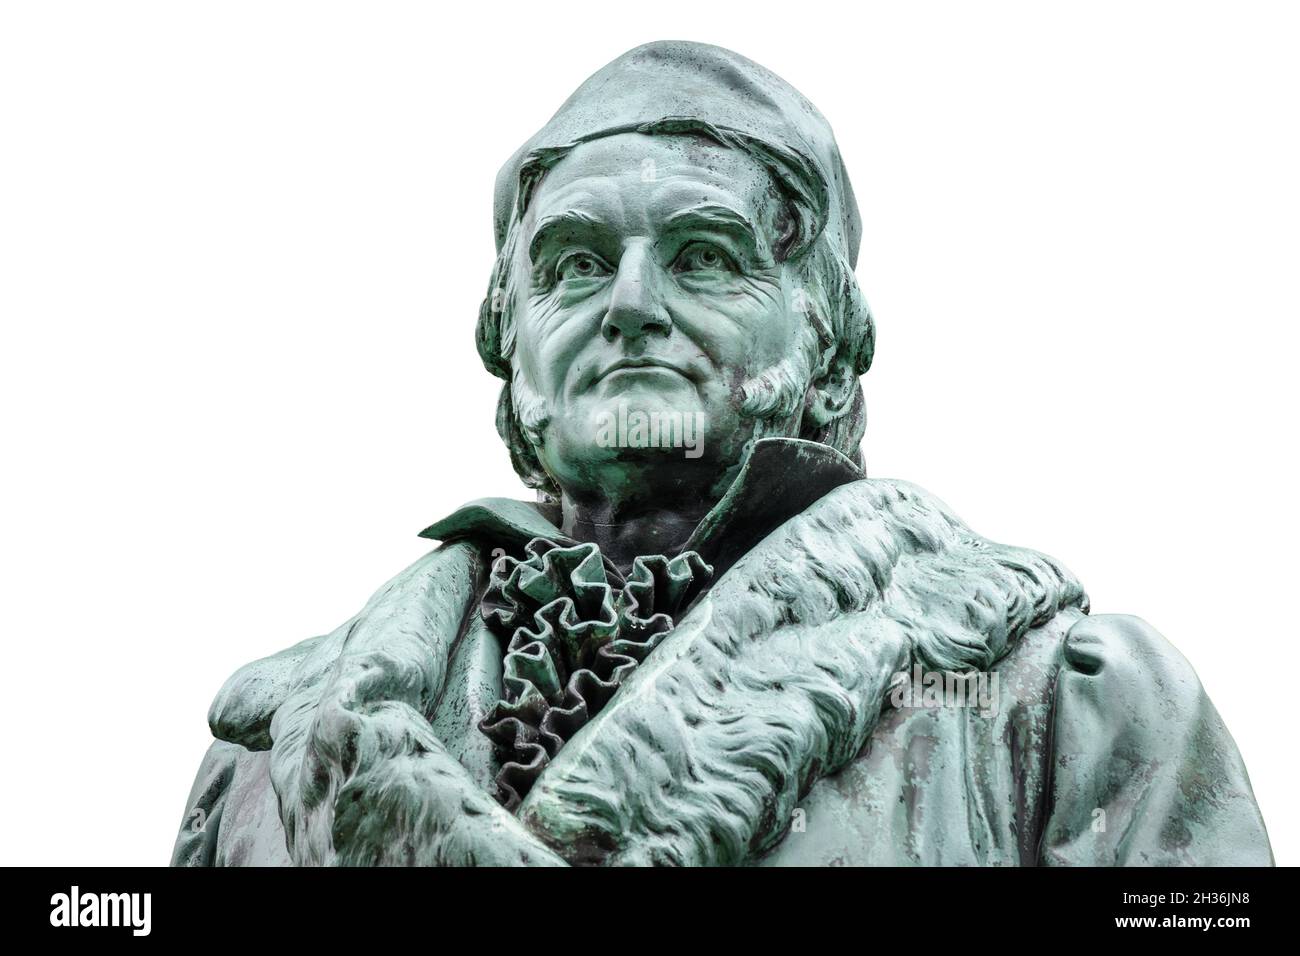 Statue historique de Carl Friedrich Gauss dans son lieu de naissance à Braunschweig, Allemagne.Célèbre mathématicien (1777-1855), isolé sur fond blanc. Banque D'Images